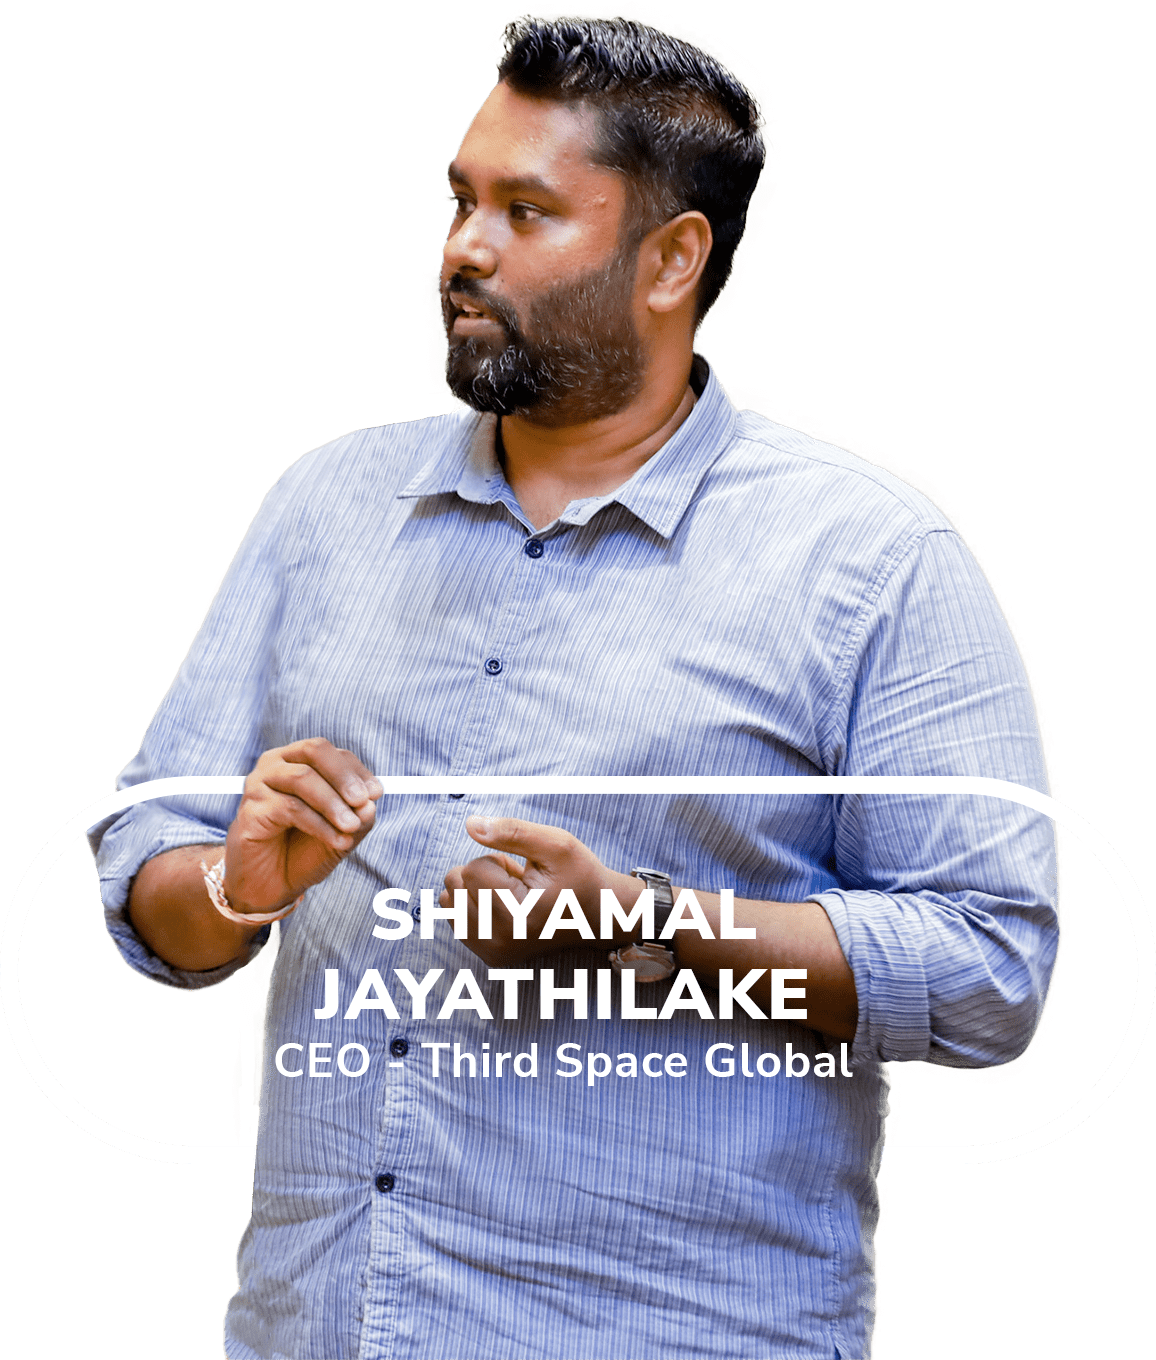 Shiyamal Jayathilake, CEO of Third Space Global